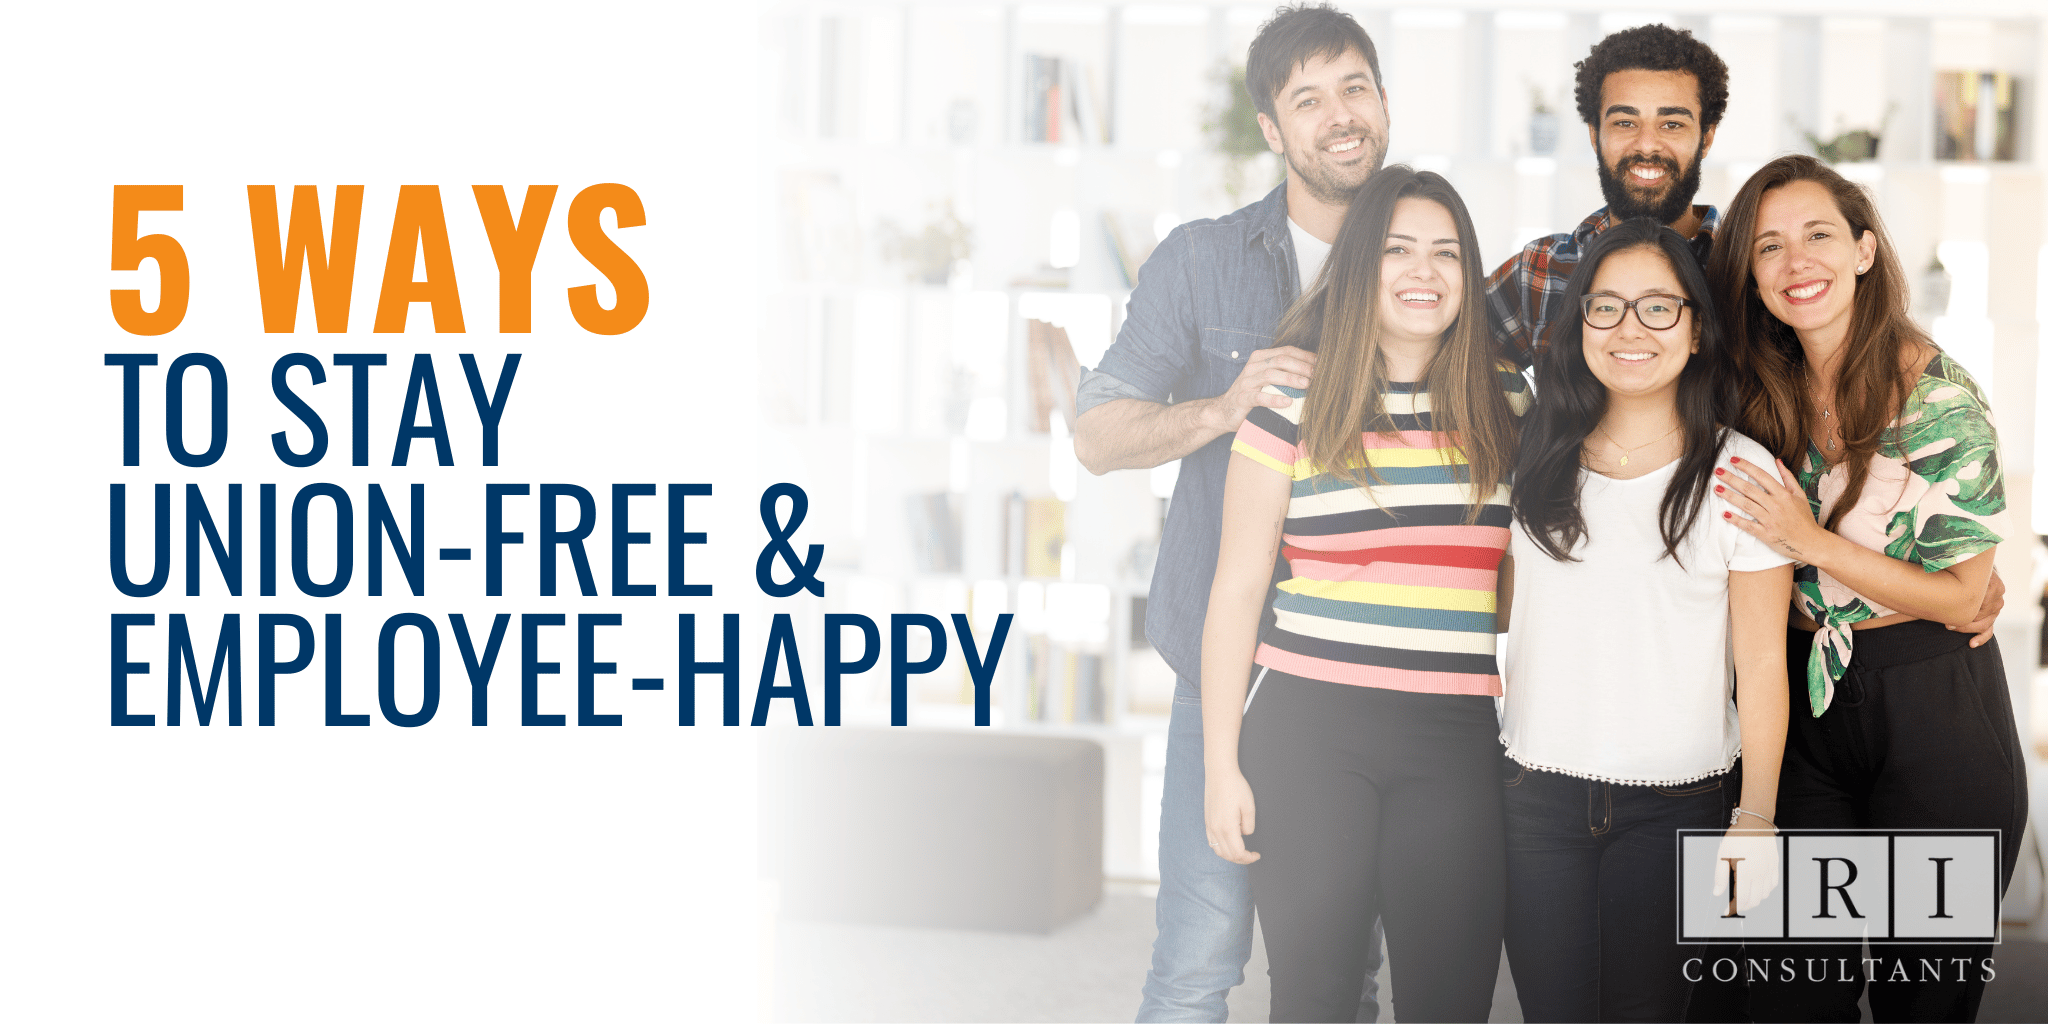 5 Ways To Stay Union-Free & Employee-Happy